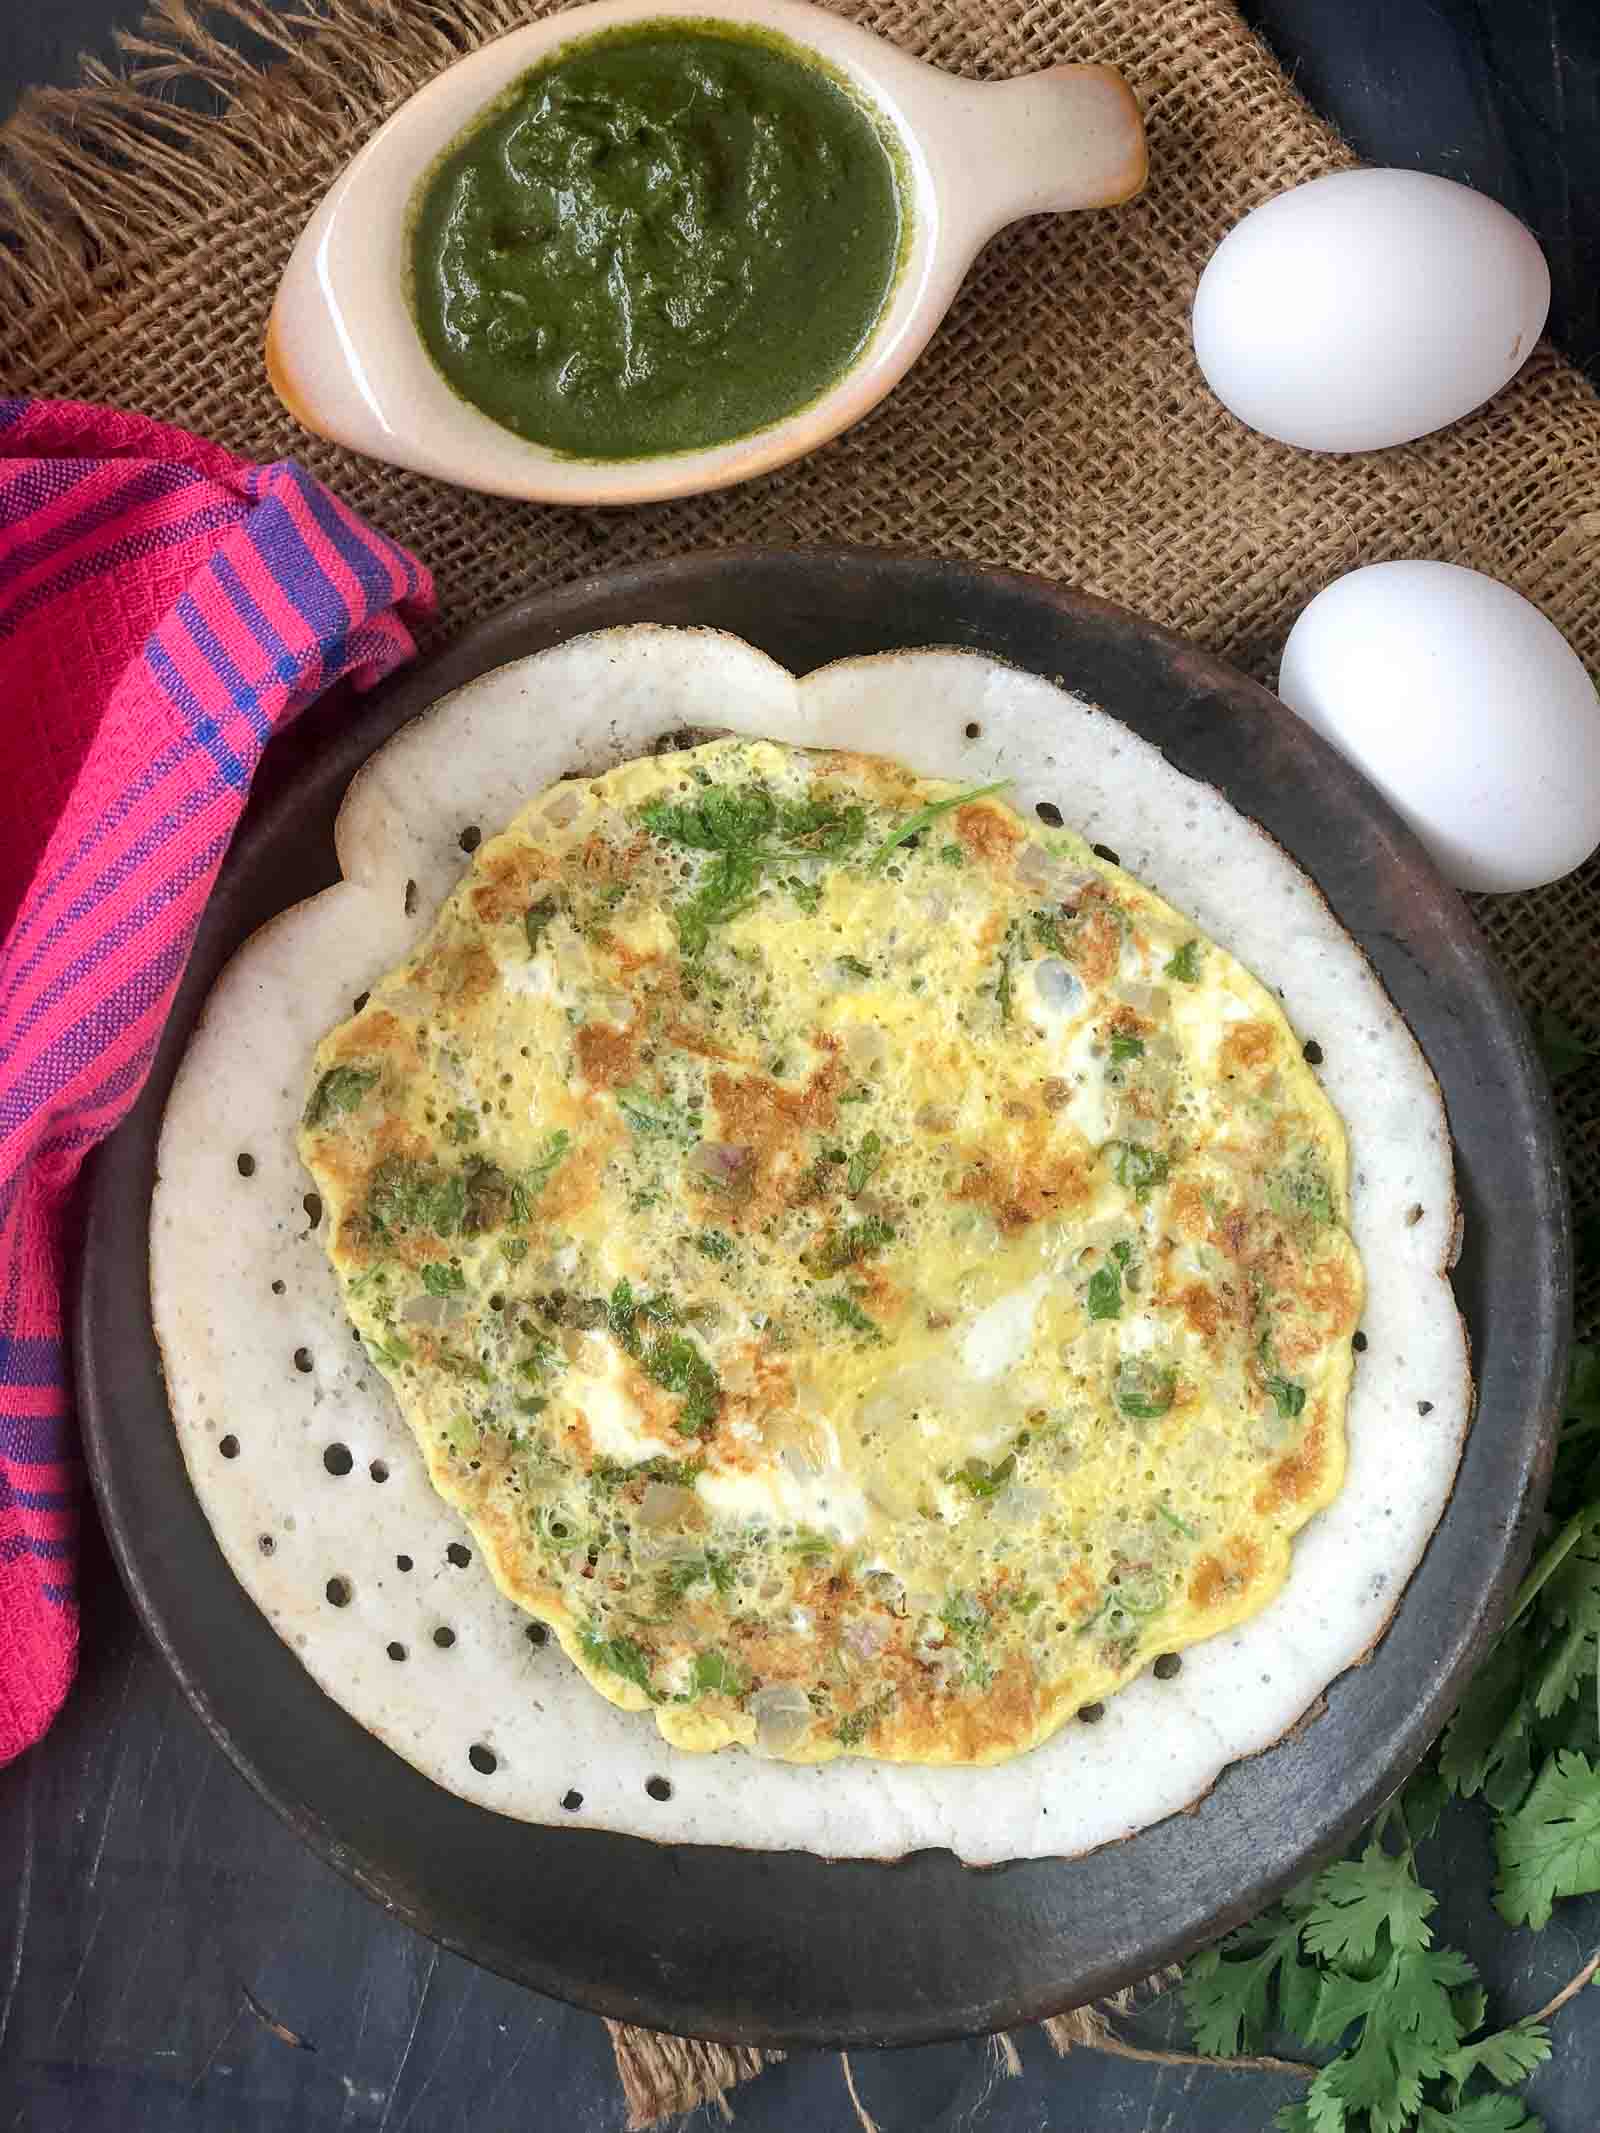 Egg Masala Dosa In Tamil Masala Muttai Dosai Recipe Egg Masala Dosai Egg Recipes In Tamil Breakfast